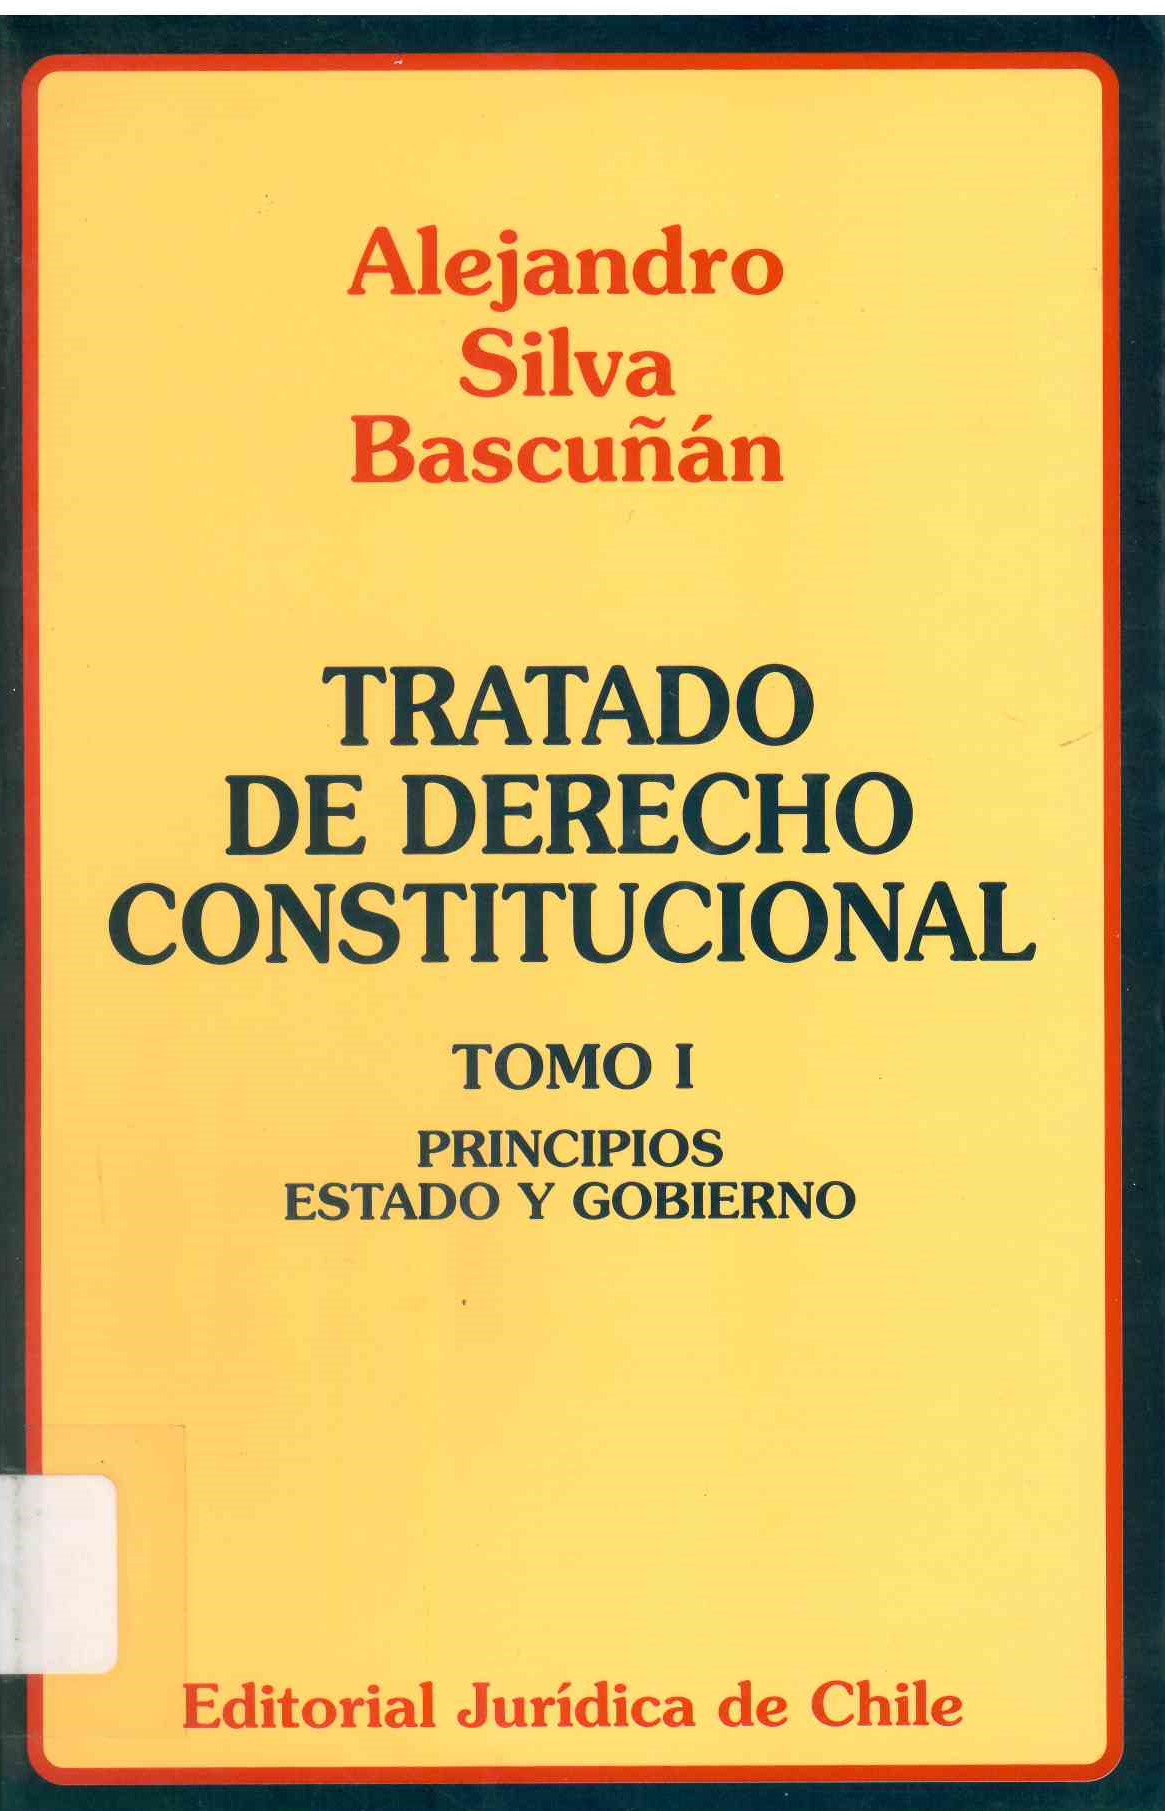 Tratado de derecho constitucional.